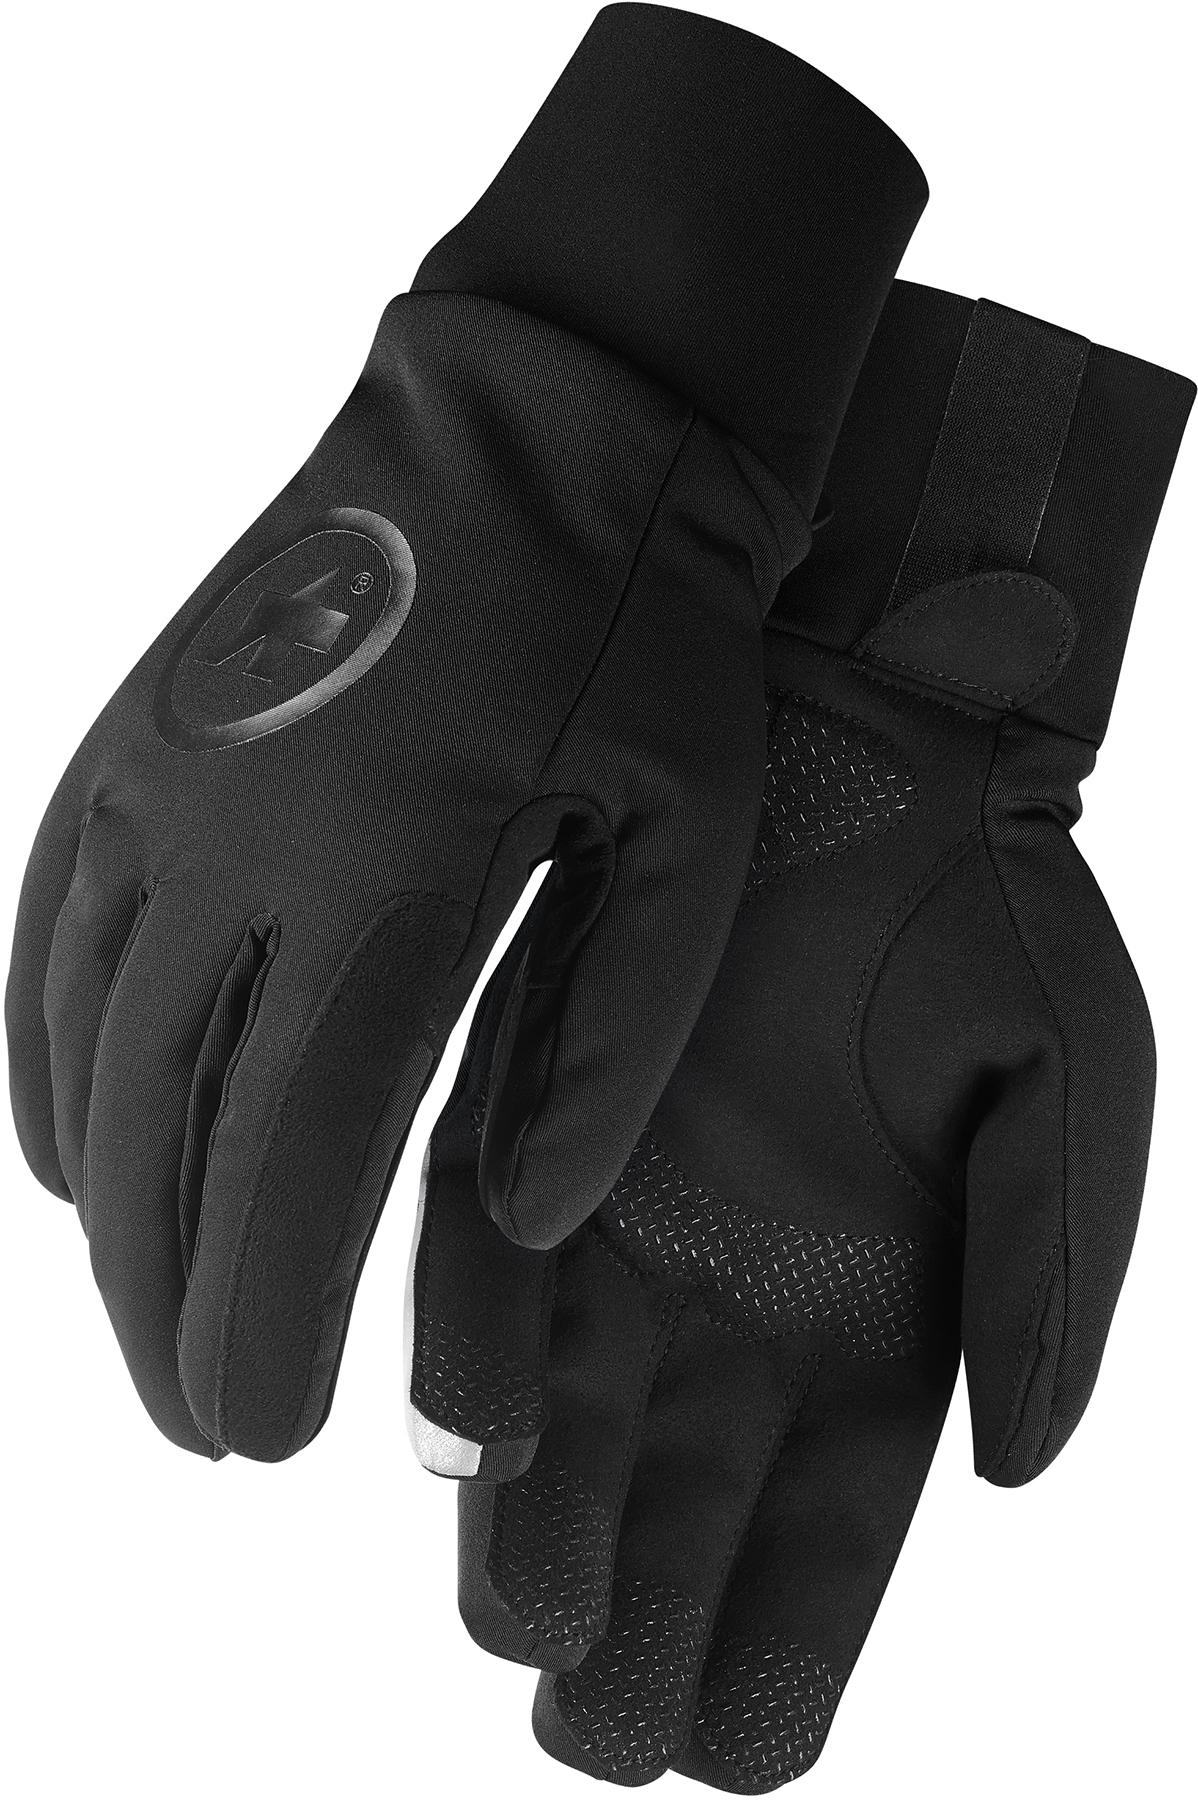 Assos Assosoires Ultraz Winter Gloves - Black Series